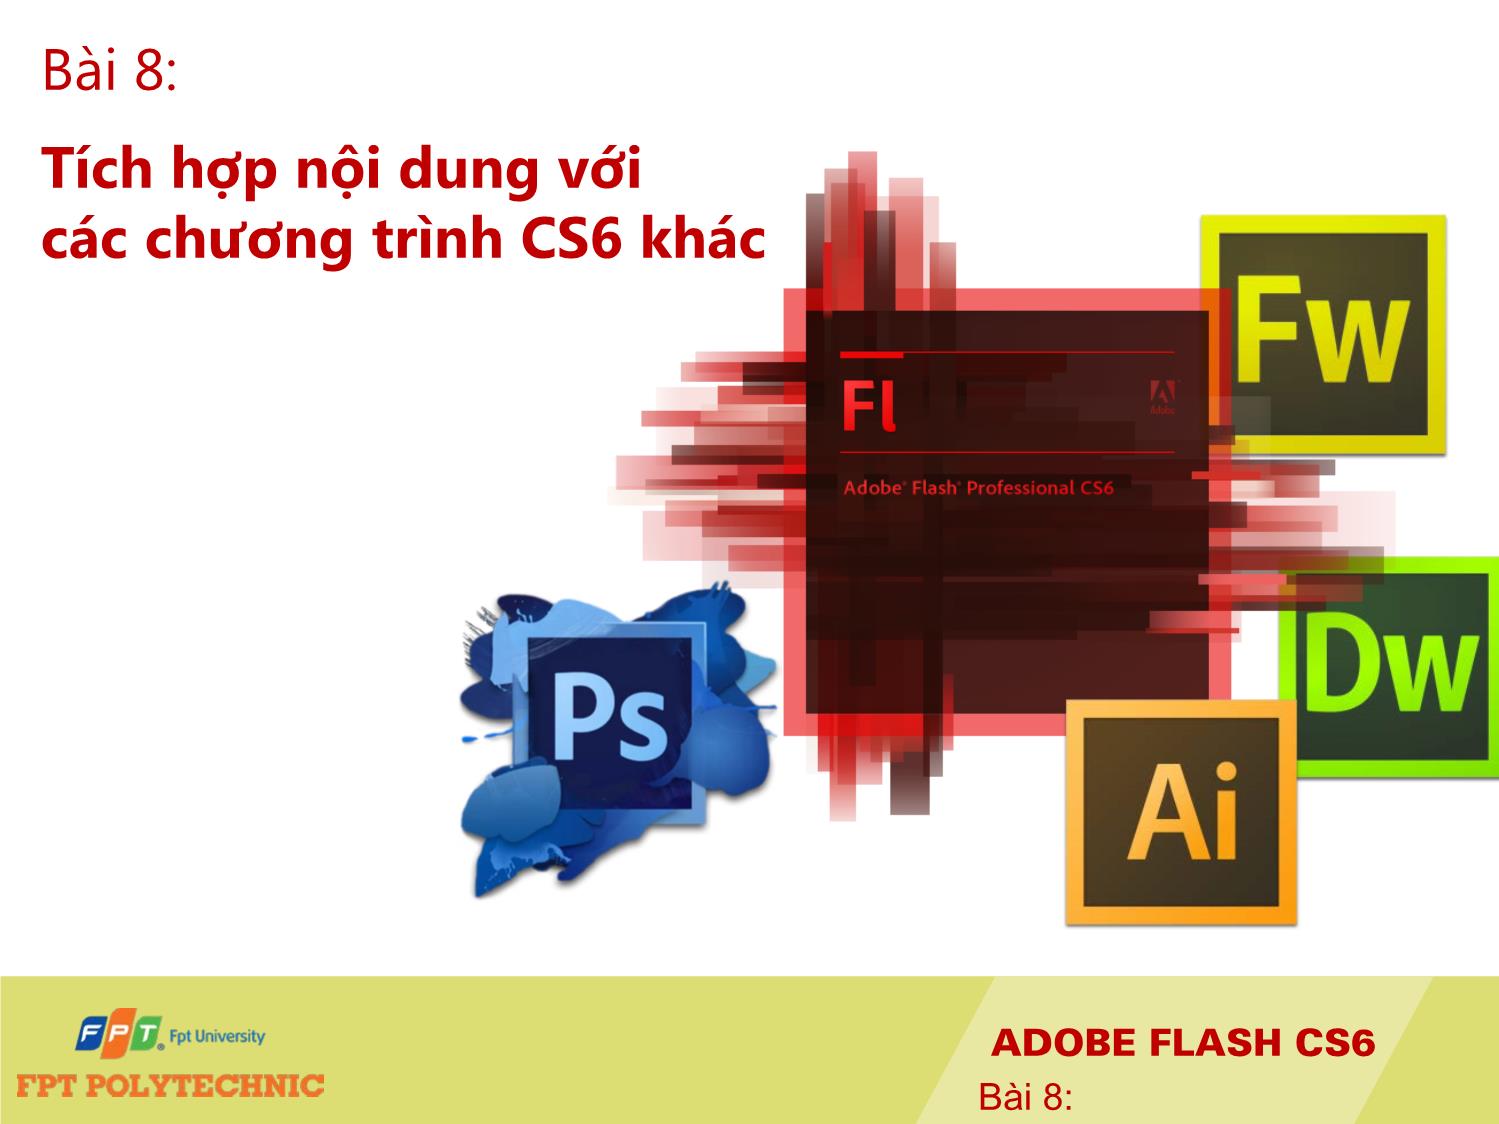 Bài giảng Thiết kế đa truyền thông với Adobe Flash CS6 - Bài 8: Tích hợp nội dung với các chương trình CS6 khác trang 1